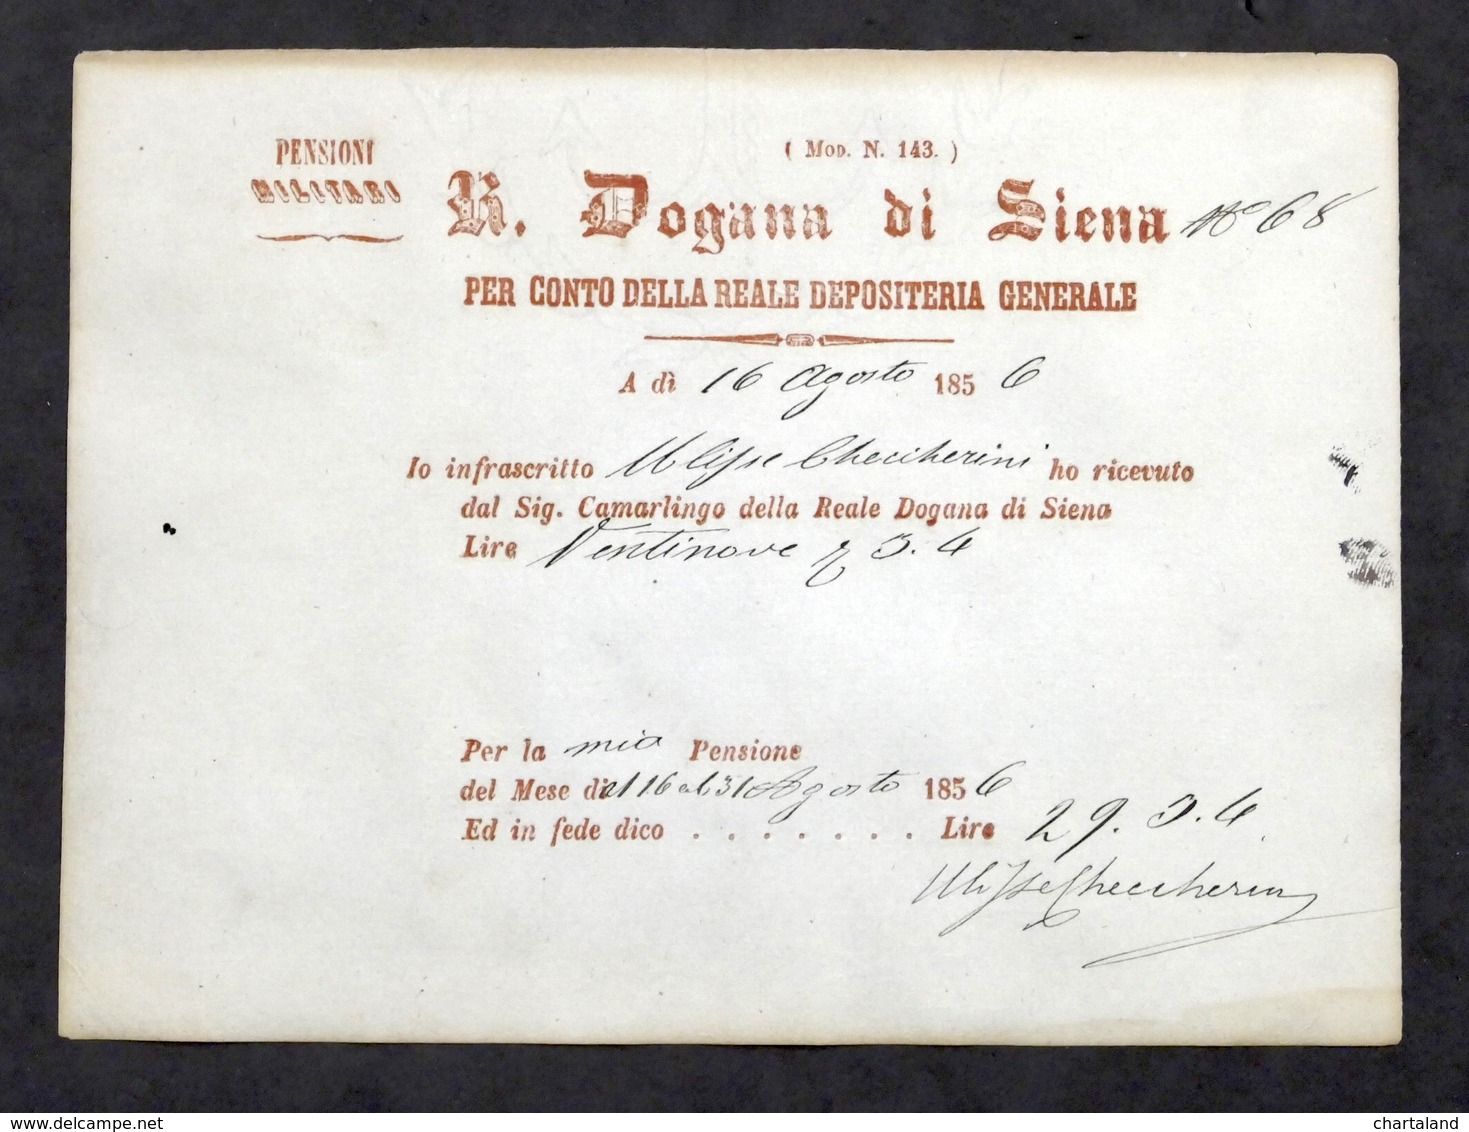 Ricevuta Ritiro Pensione Militare Dalla Reale Dogana Di Siena - 1856 - Documenti